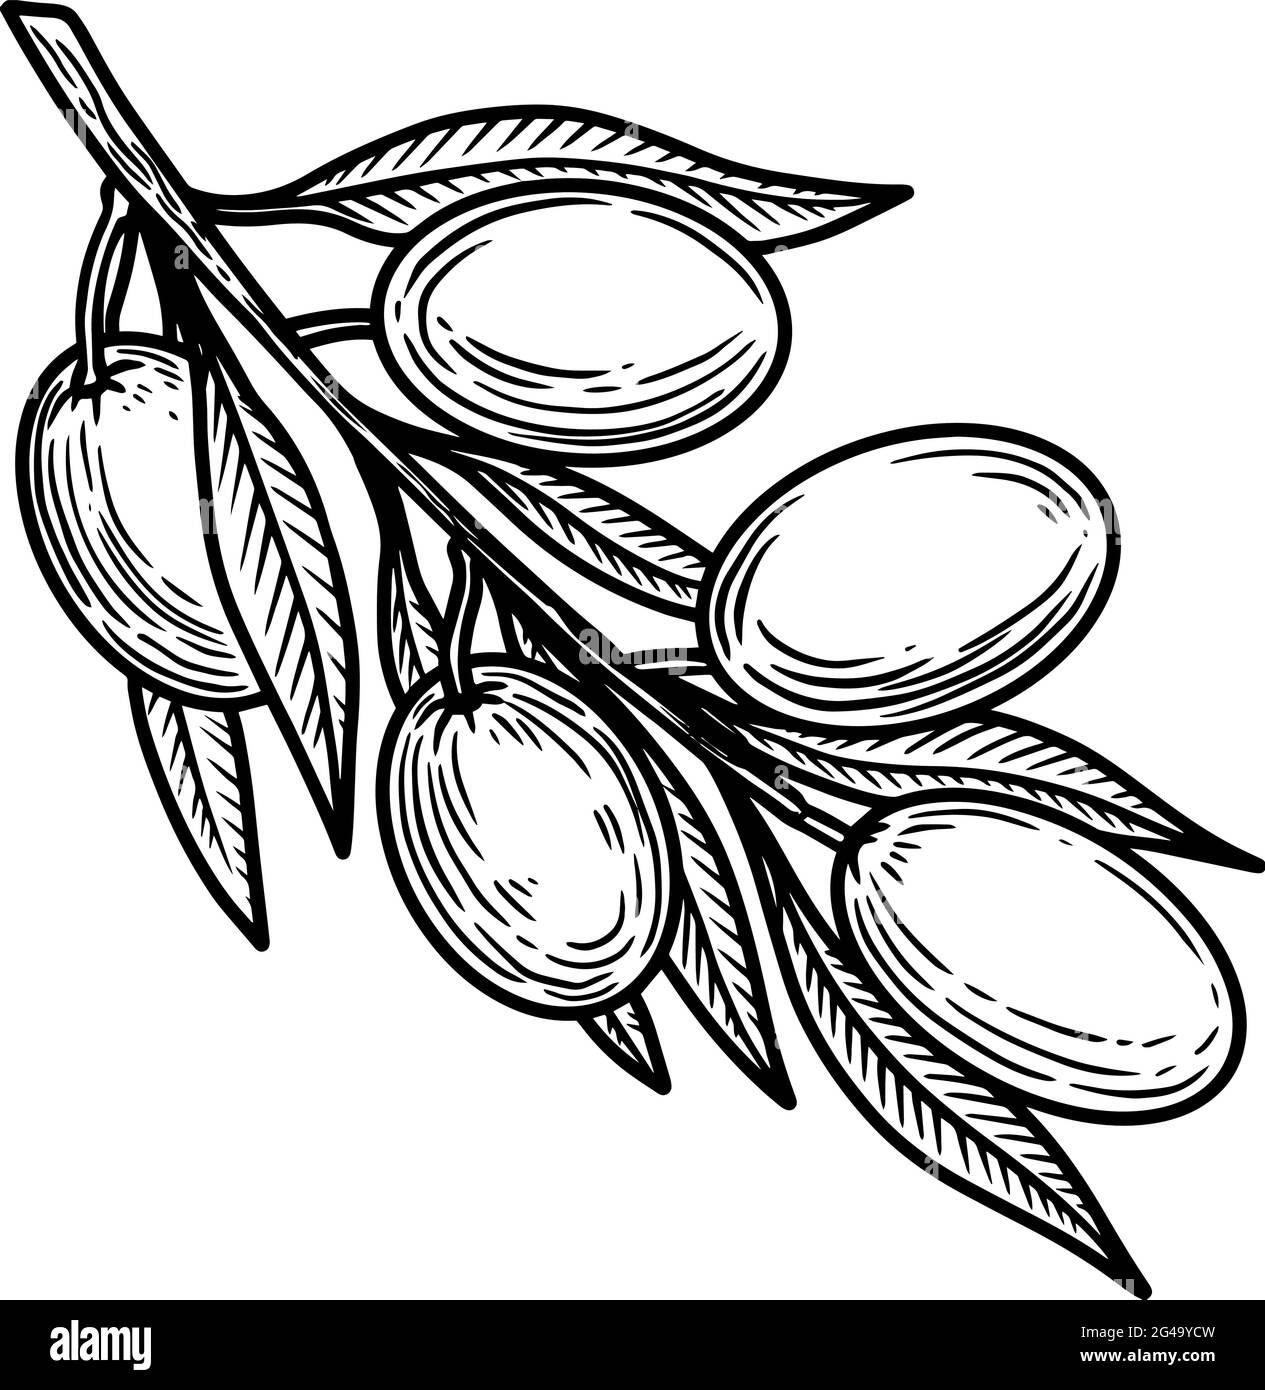 Illustration de la branche d'olive en style gravure. Élément de conception pour affiche, carte, bannière, panneau, logo. Illustration vectorielle Illustration de Vecteur